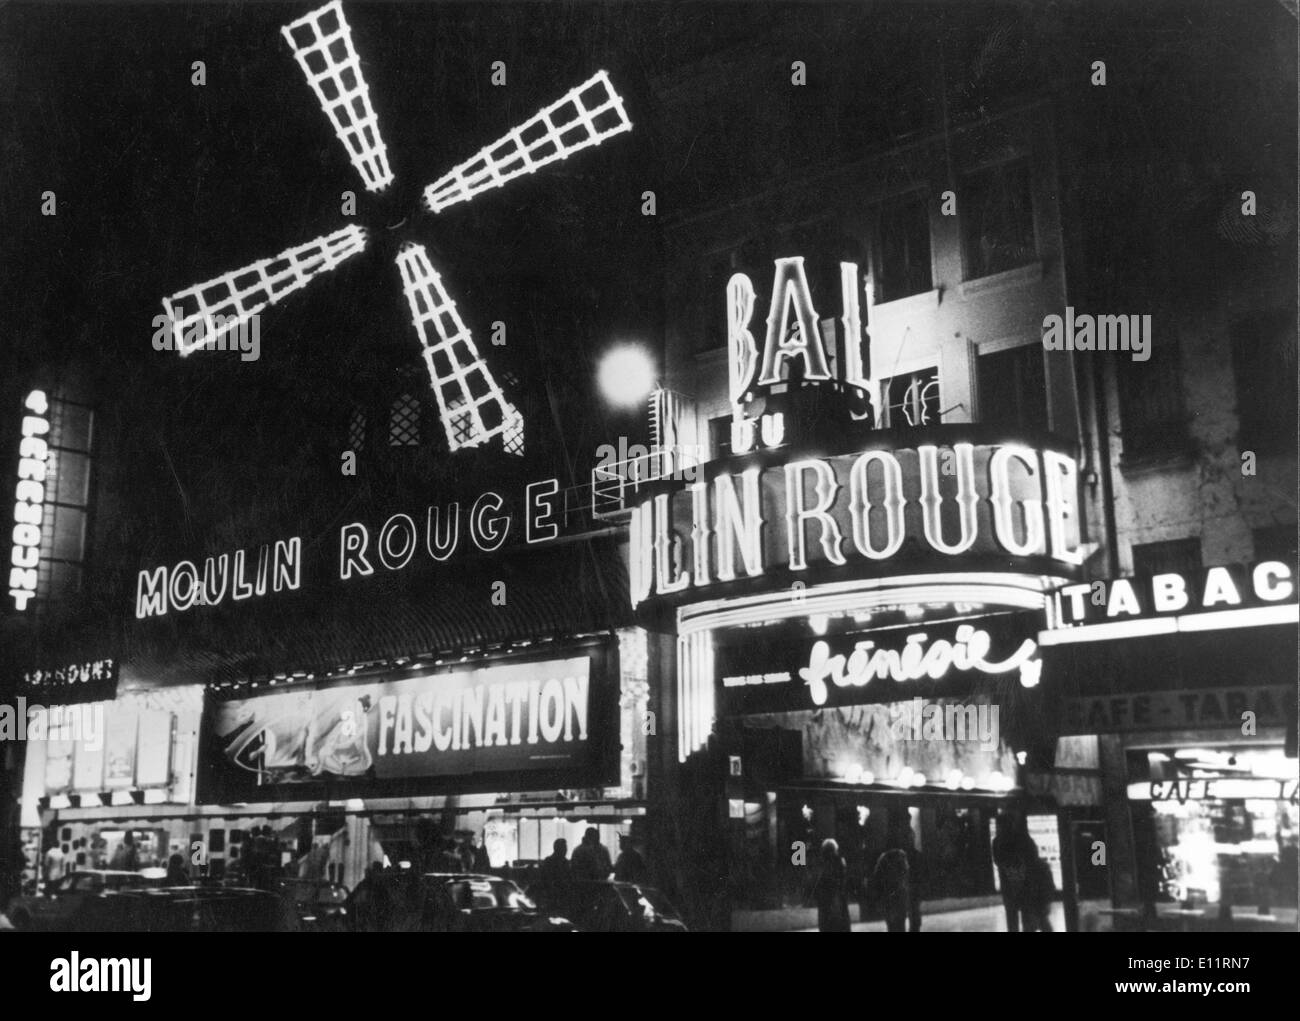 Il 1 gennaio, 1980 - Parigi, Francia - mondo-famoso Moulin Rouge Cabaret, immortalato da Toulouse-Lautrec è situato a Montmartre, il solo posto a Parigi dove si può vedere la vera può Can. Il Moulin Rouge è una destinazione turistica che offre spettacoli di danza e musica per i visitatori adulti provenienti da tutto il mondo. Molto del romanticismo dalla fine del secolo la Francia è ancora presente nell'arredamento del club. Molte star internazionali hanno suonato sul palco del Moulin Rouge: Ella Fitzgerald, Liza Minelli, Frank Sinatra, Elton John Foto Stock